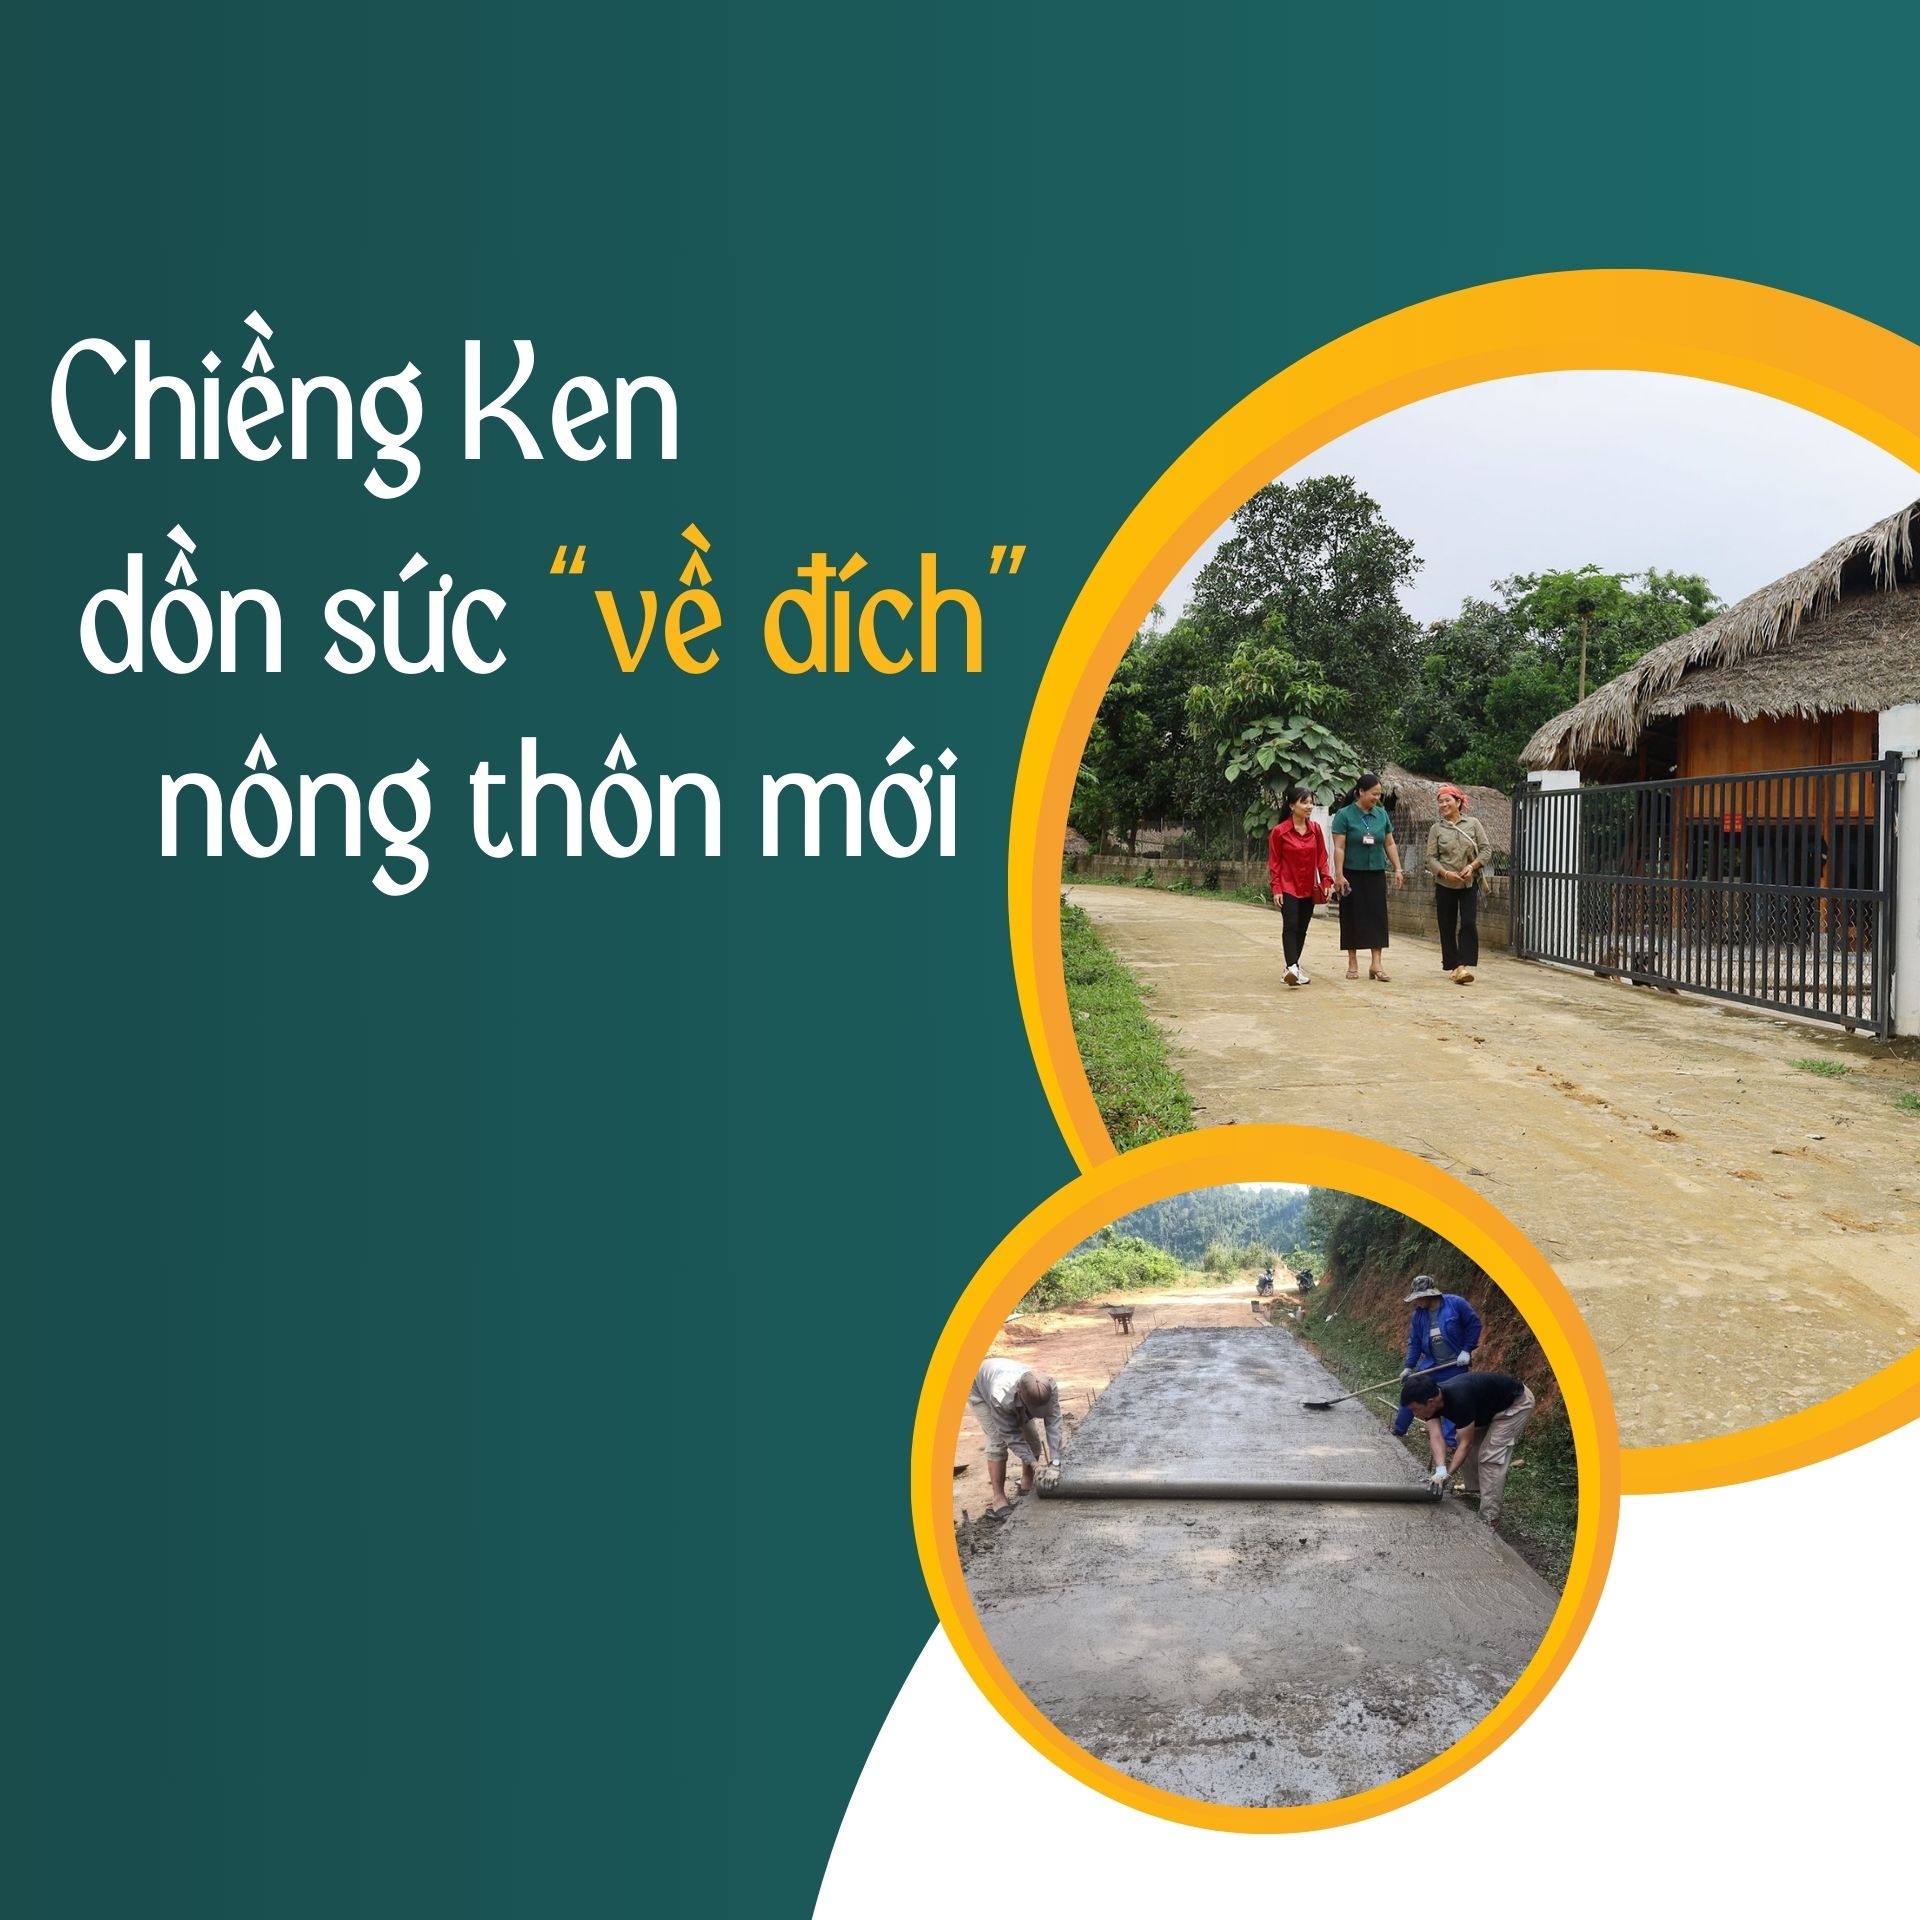 Chiềng Ken dồn sức “về đích” nông thôn mới